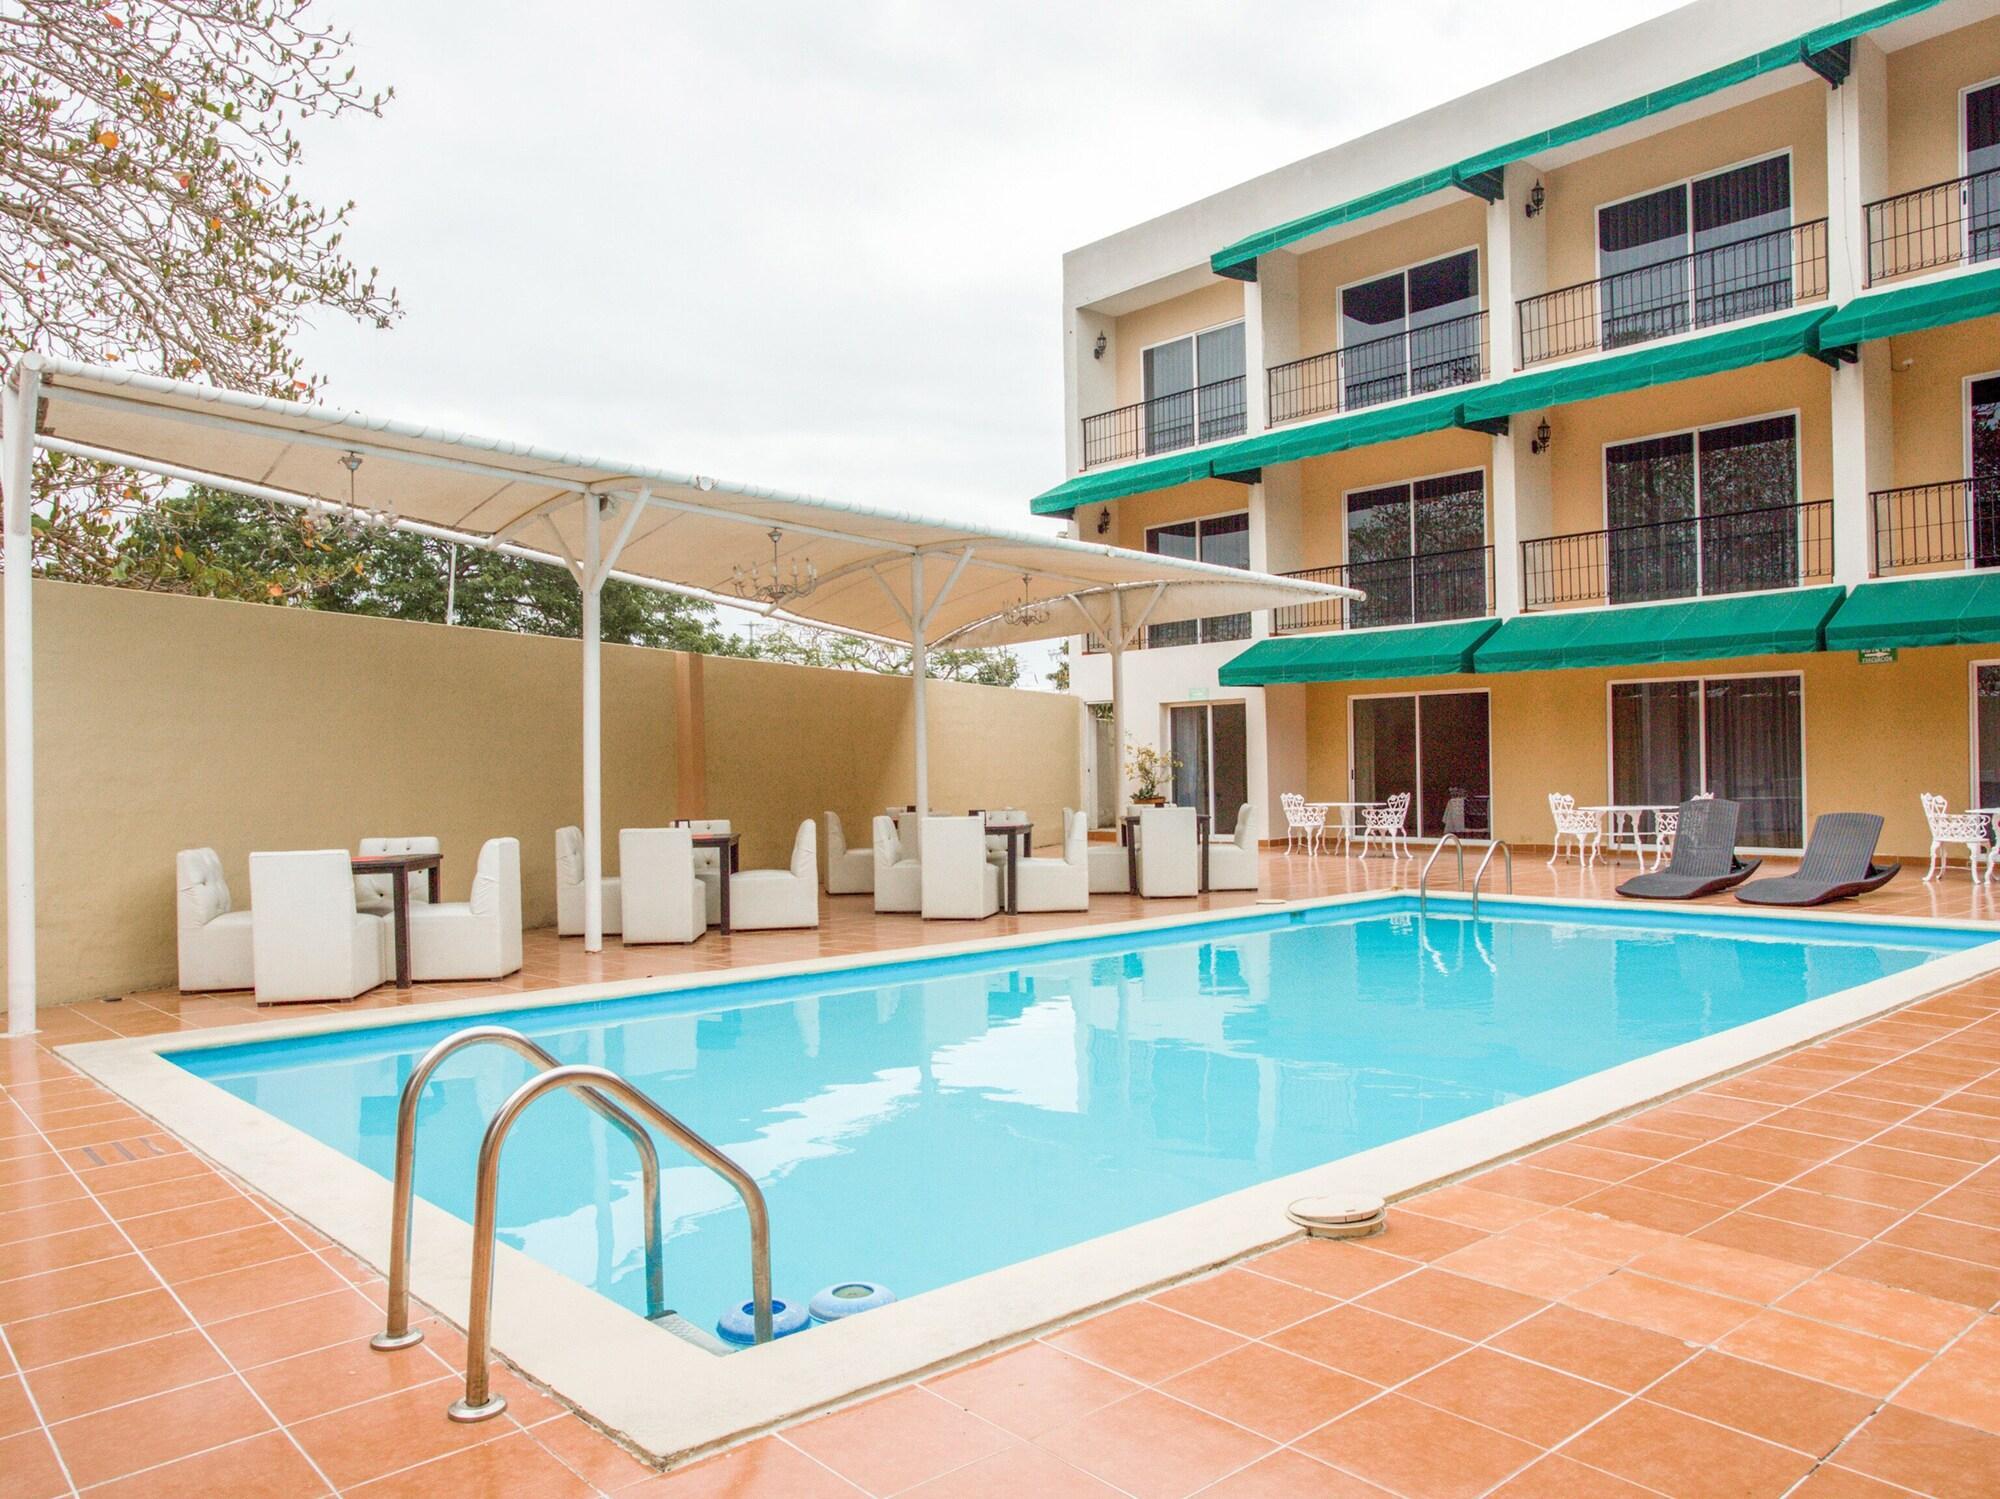 Recreational facility Kin Aparthotel Siglo 21